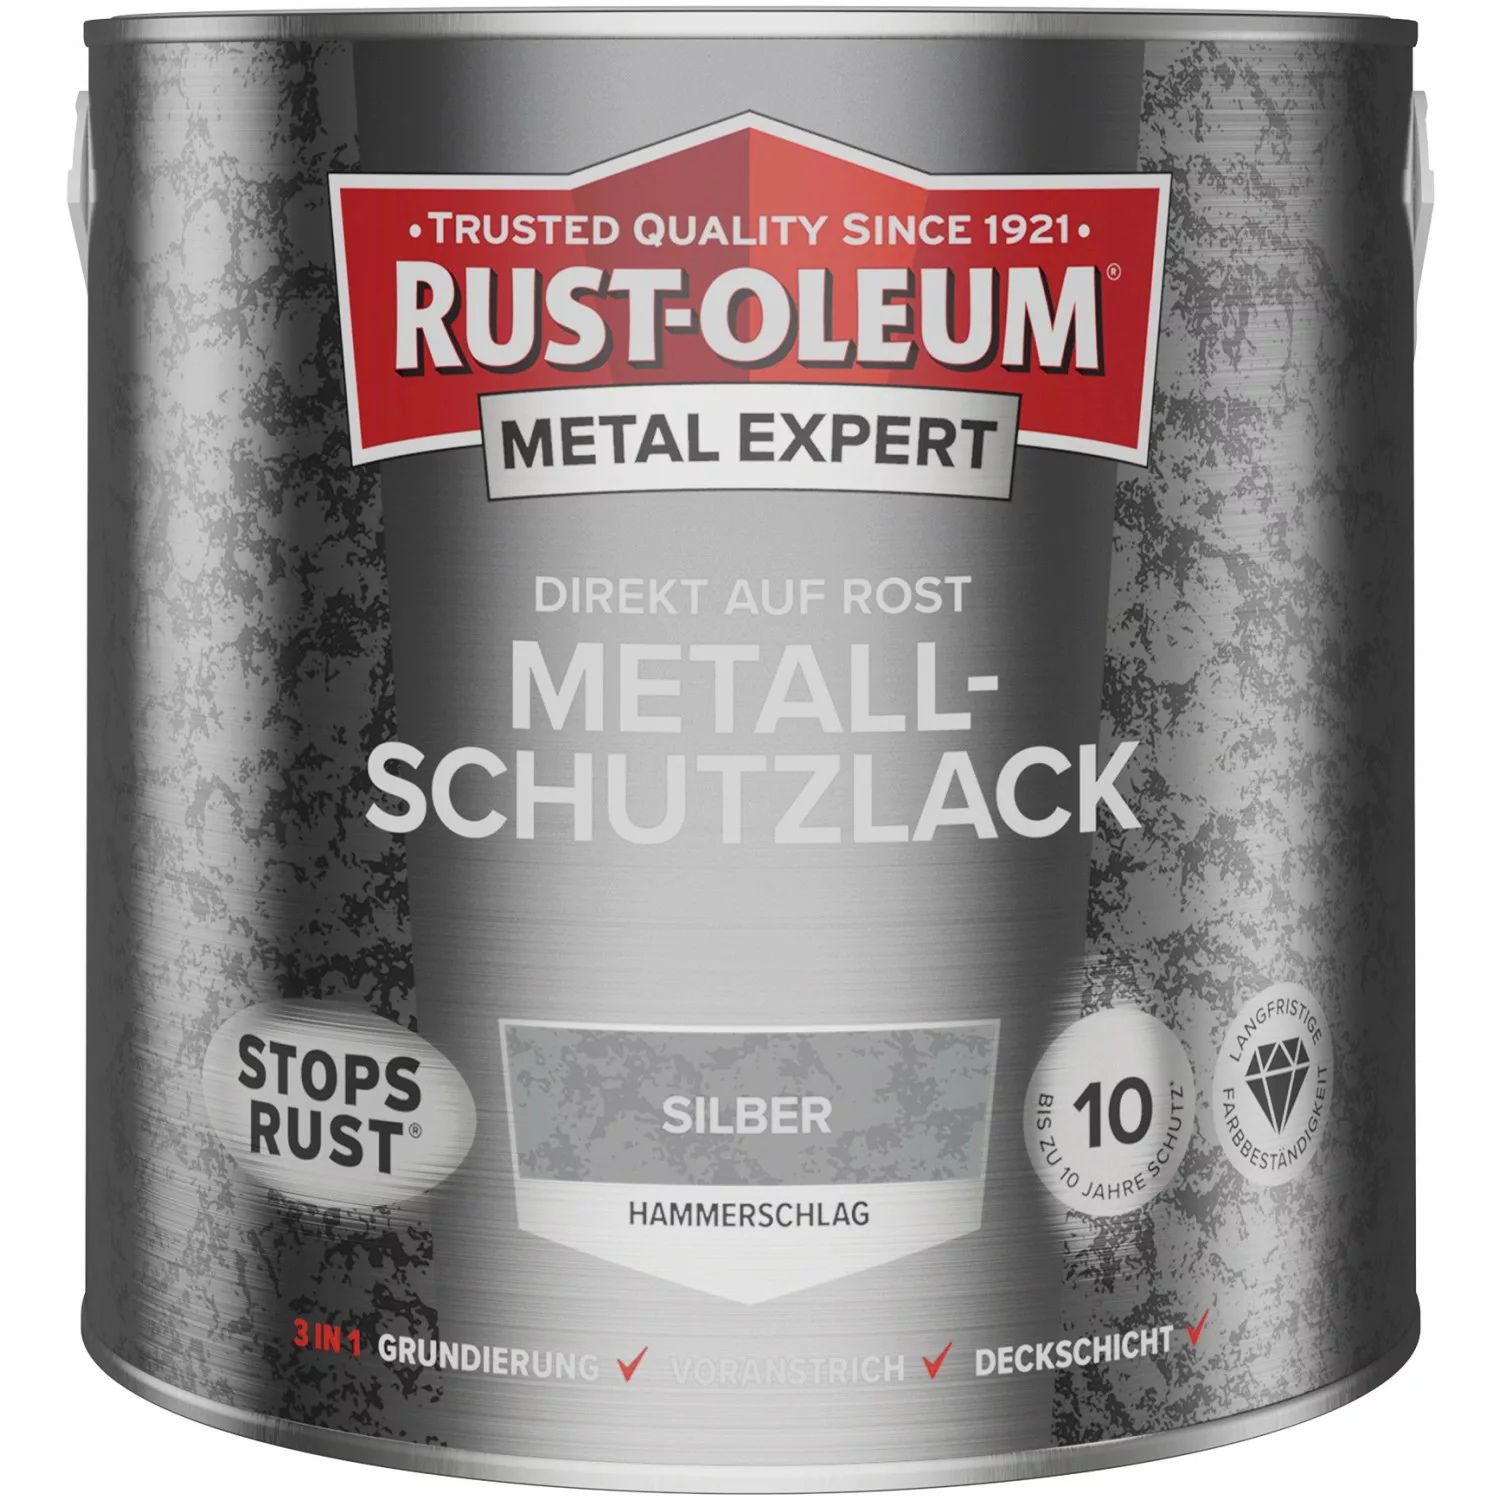 Rust-Oleum Metal Expert Hammerschlag Silber 2,5 l günstig online kaufen